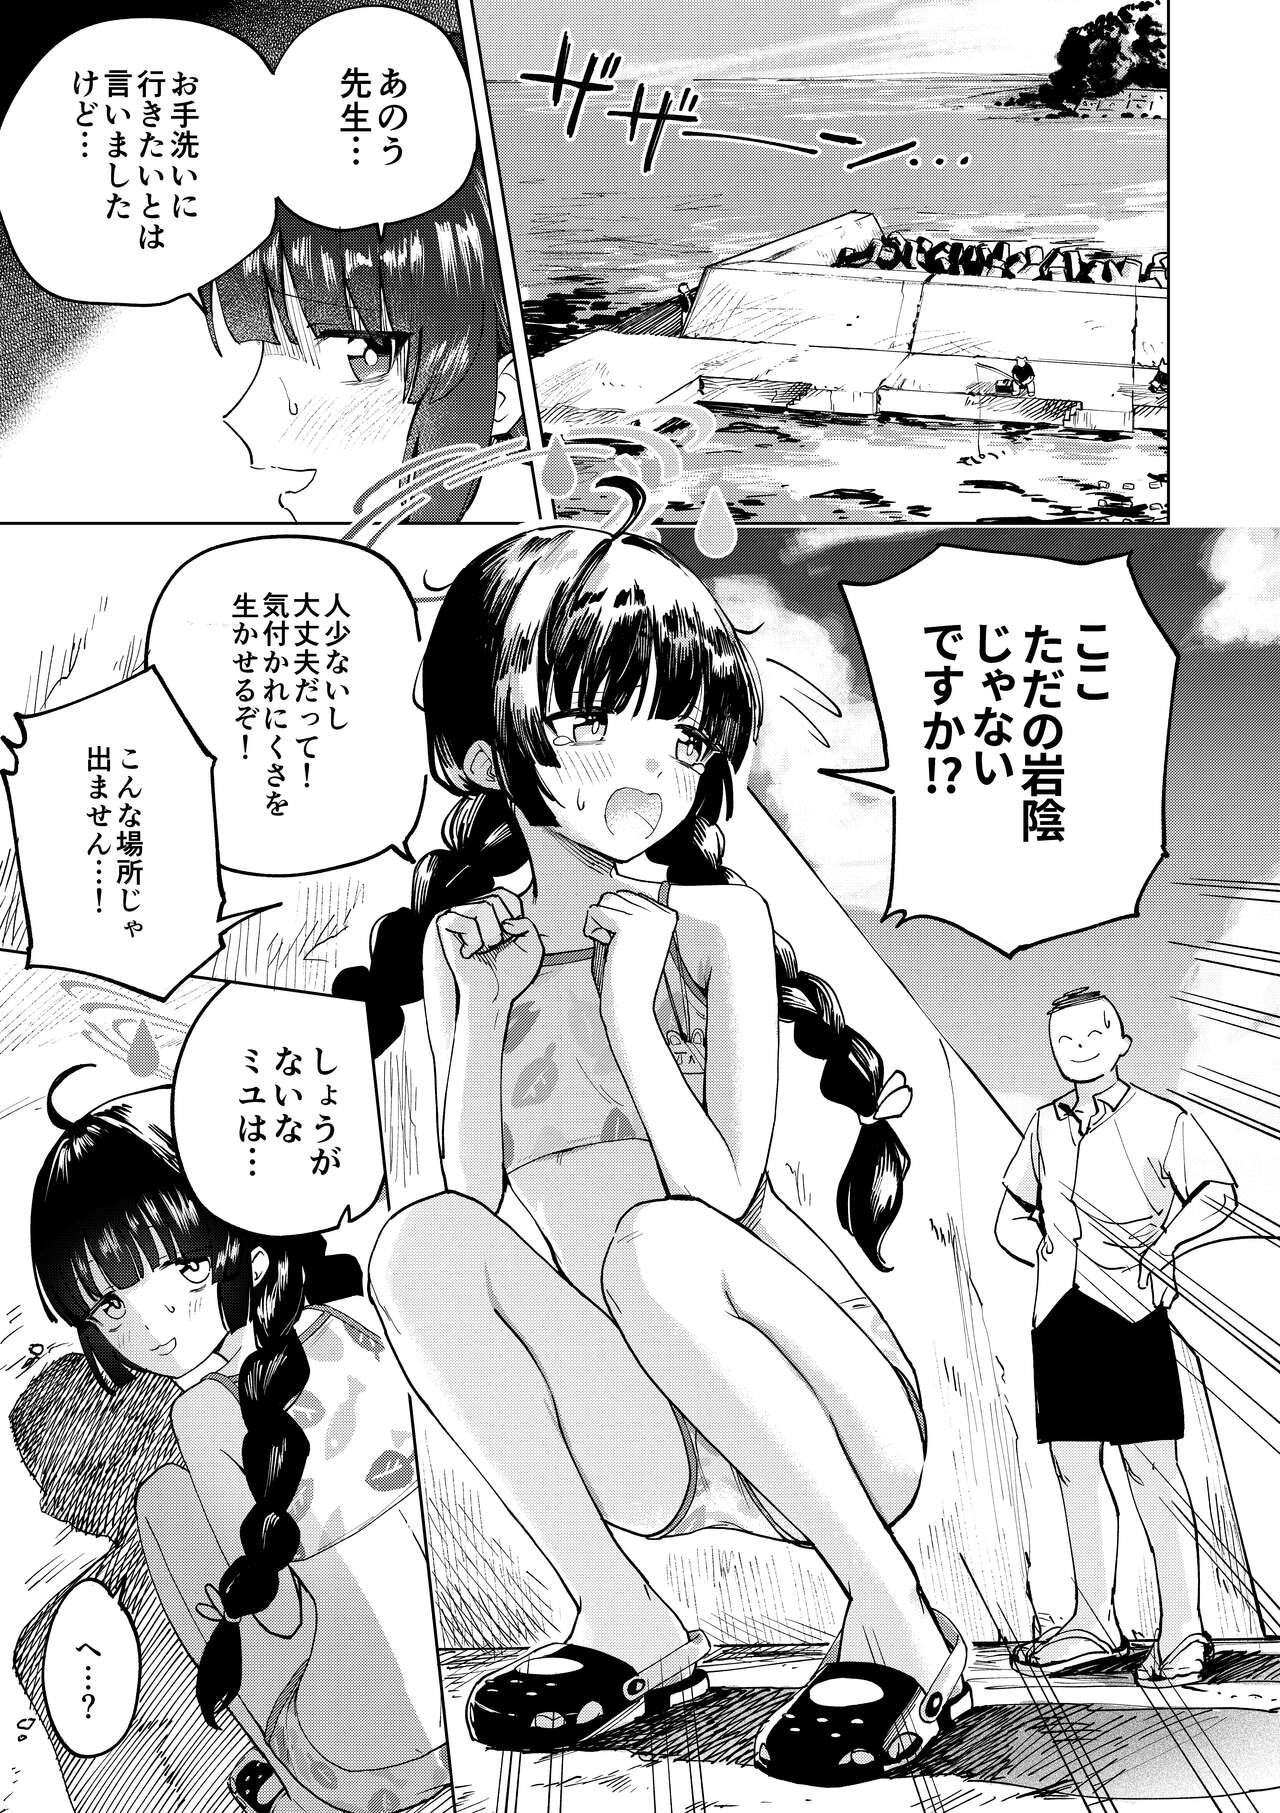 Cojiendo Miyu to Umi de Oshikko suru Manga - Blue archive Omegle - Page 1